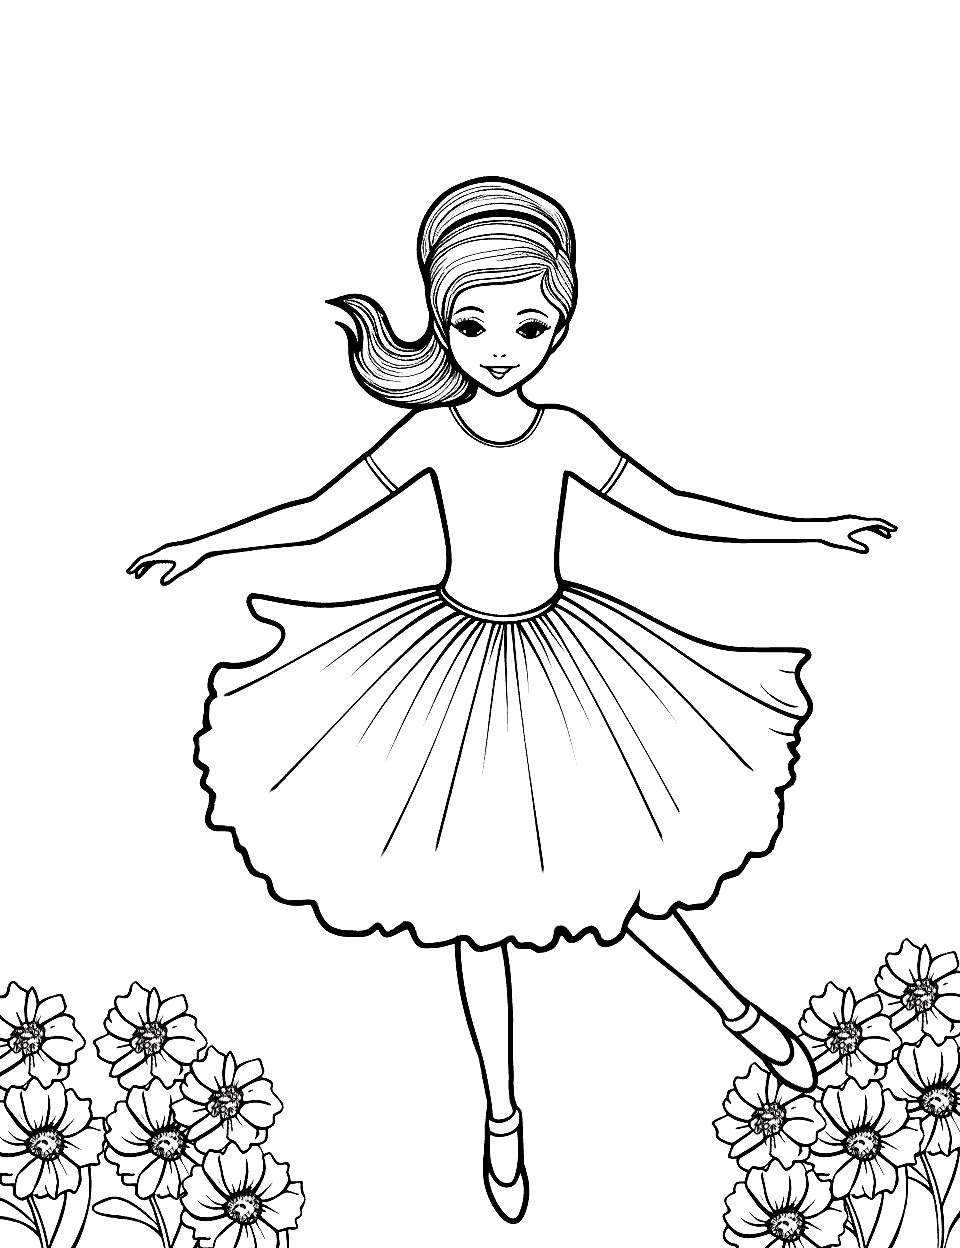 Garden Ballet Performance Ballerina Coloring Page - A ballerina performing in a beautiful garden setting.